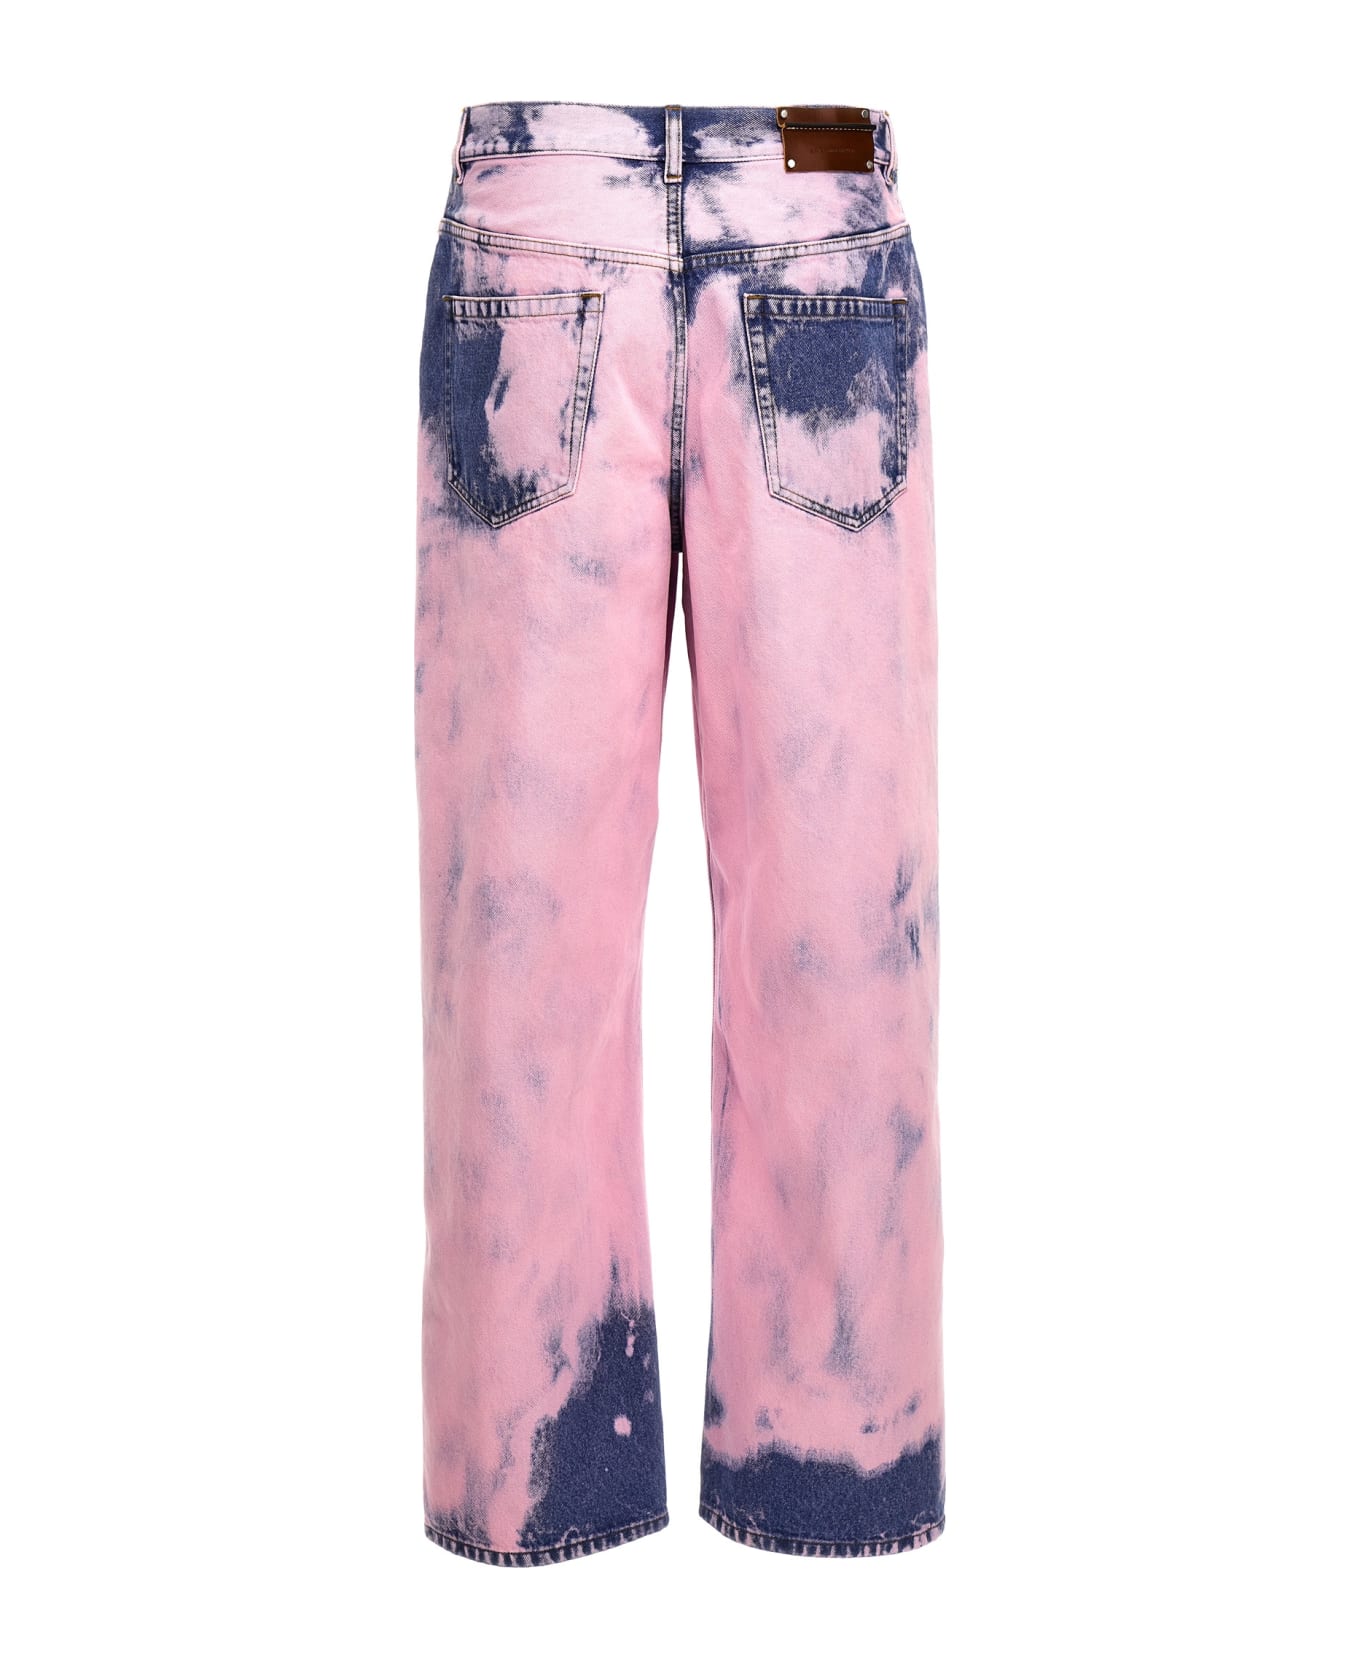 Dries Van Noten 5-pocket Jeans - Pink